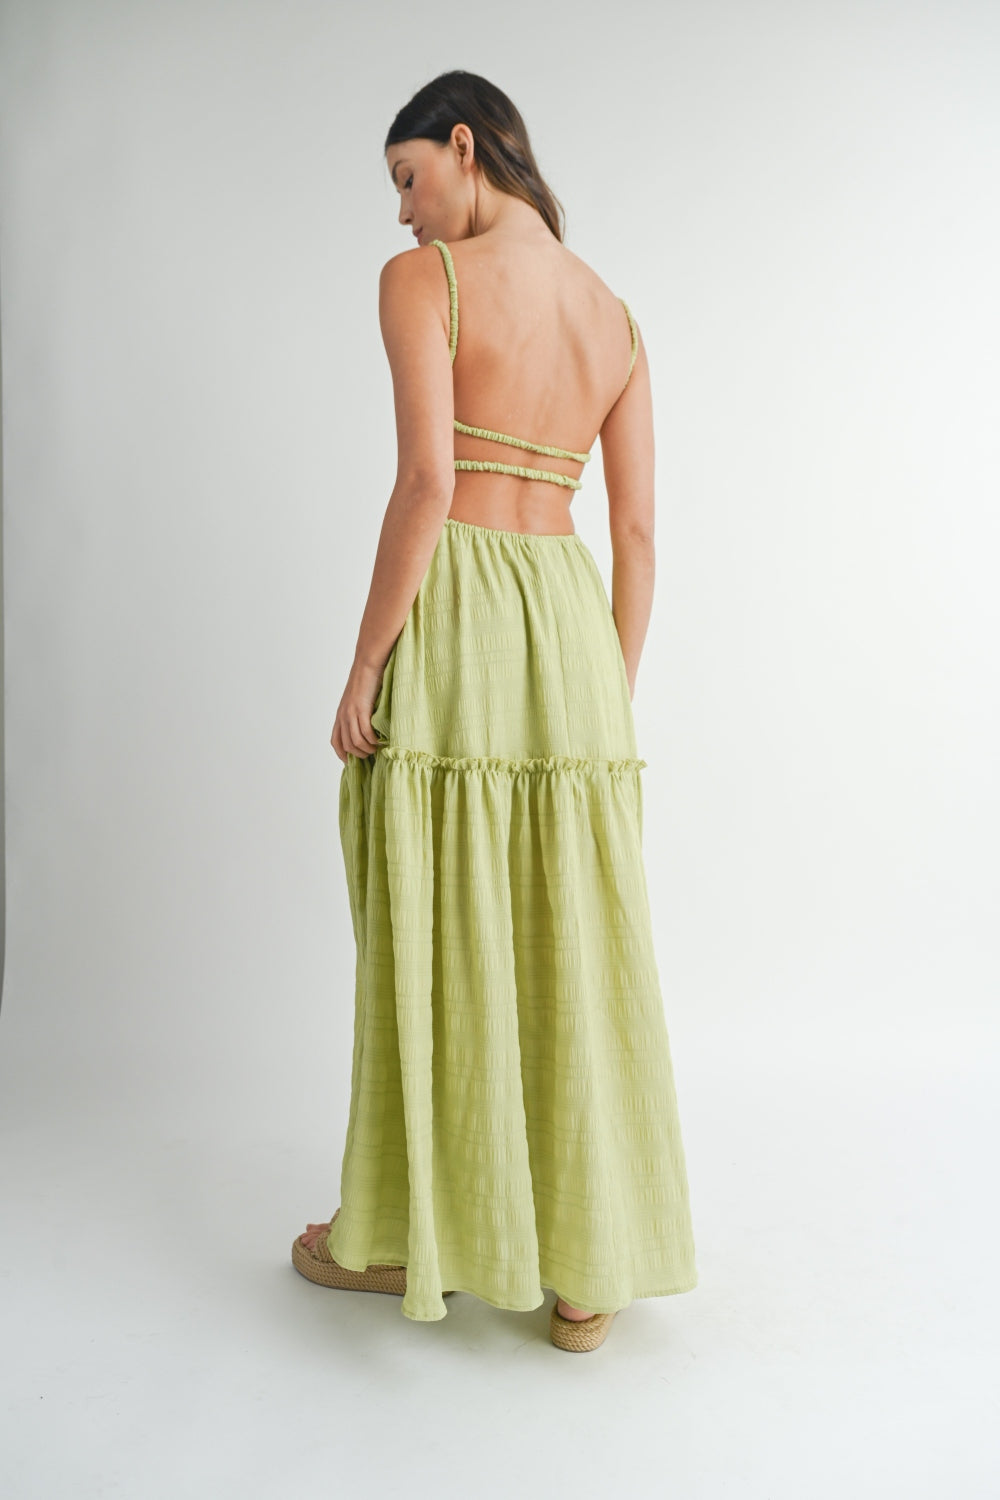 KESLEY Green Cutout Waist Backless Maxi Dress Open Back Casual Long Summer Dress